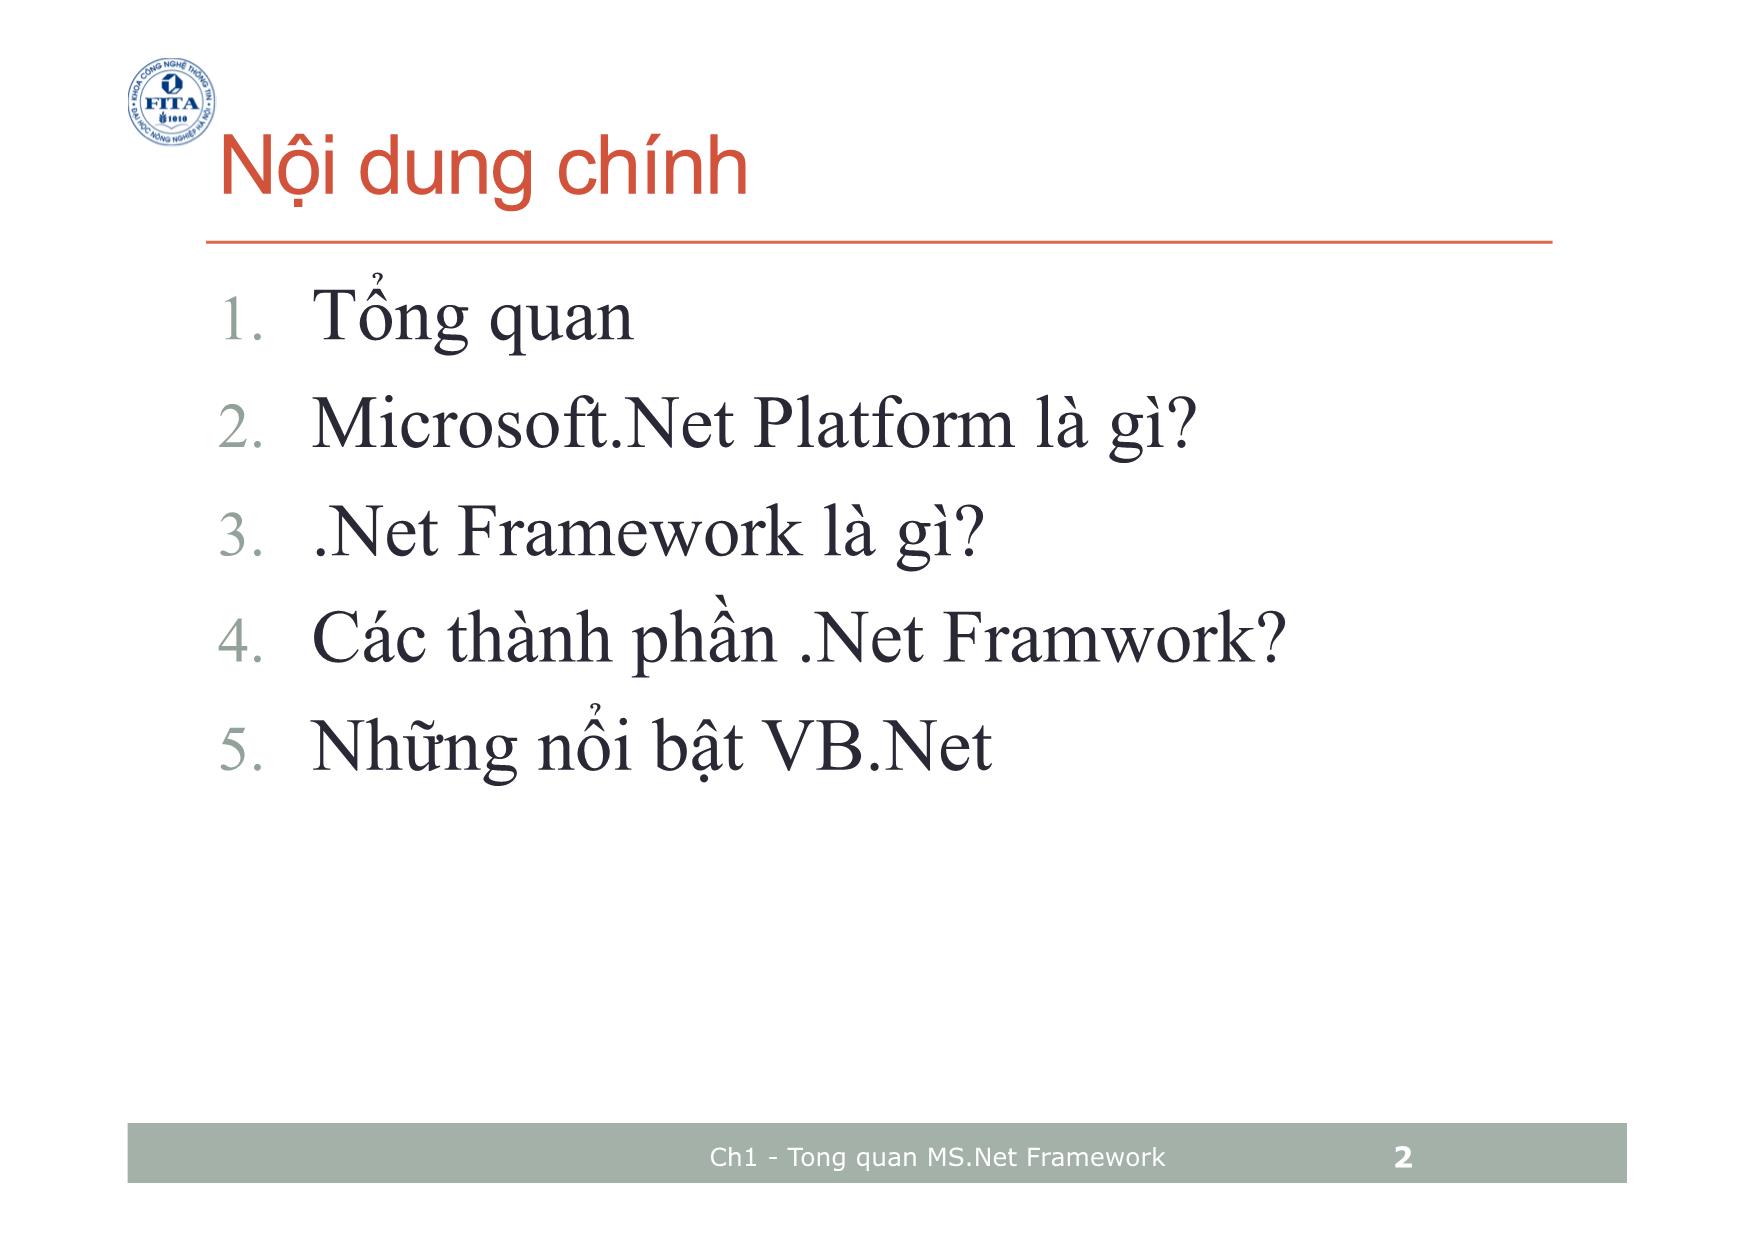 Bài giảng Microsoft.Net Platform - Chương 1: Tổng quan về Microsoft.Net Platform - Phan Trọng Tiến trang 2